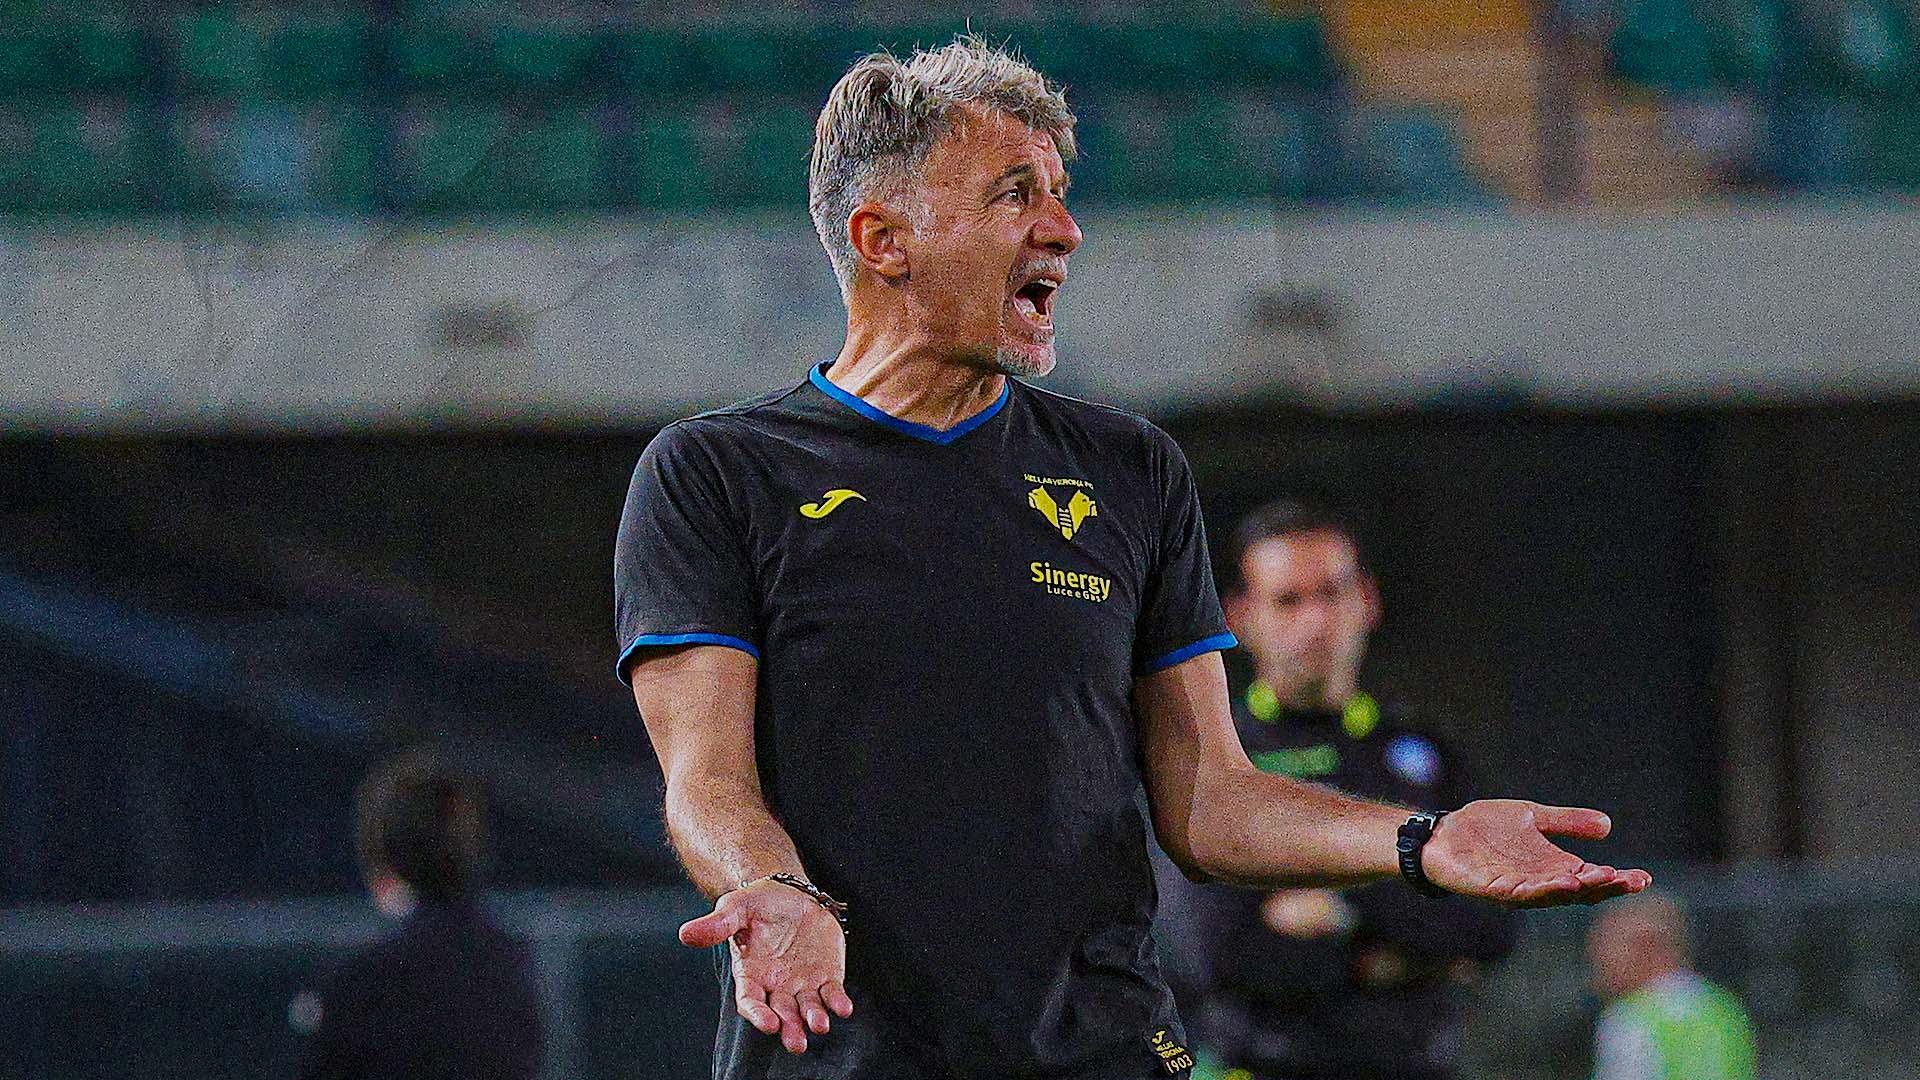 UFFICIALE – Baroni nuovo tecnico della Lazio: la nota del club